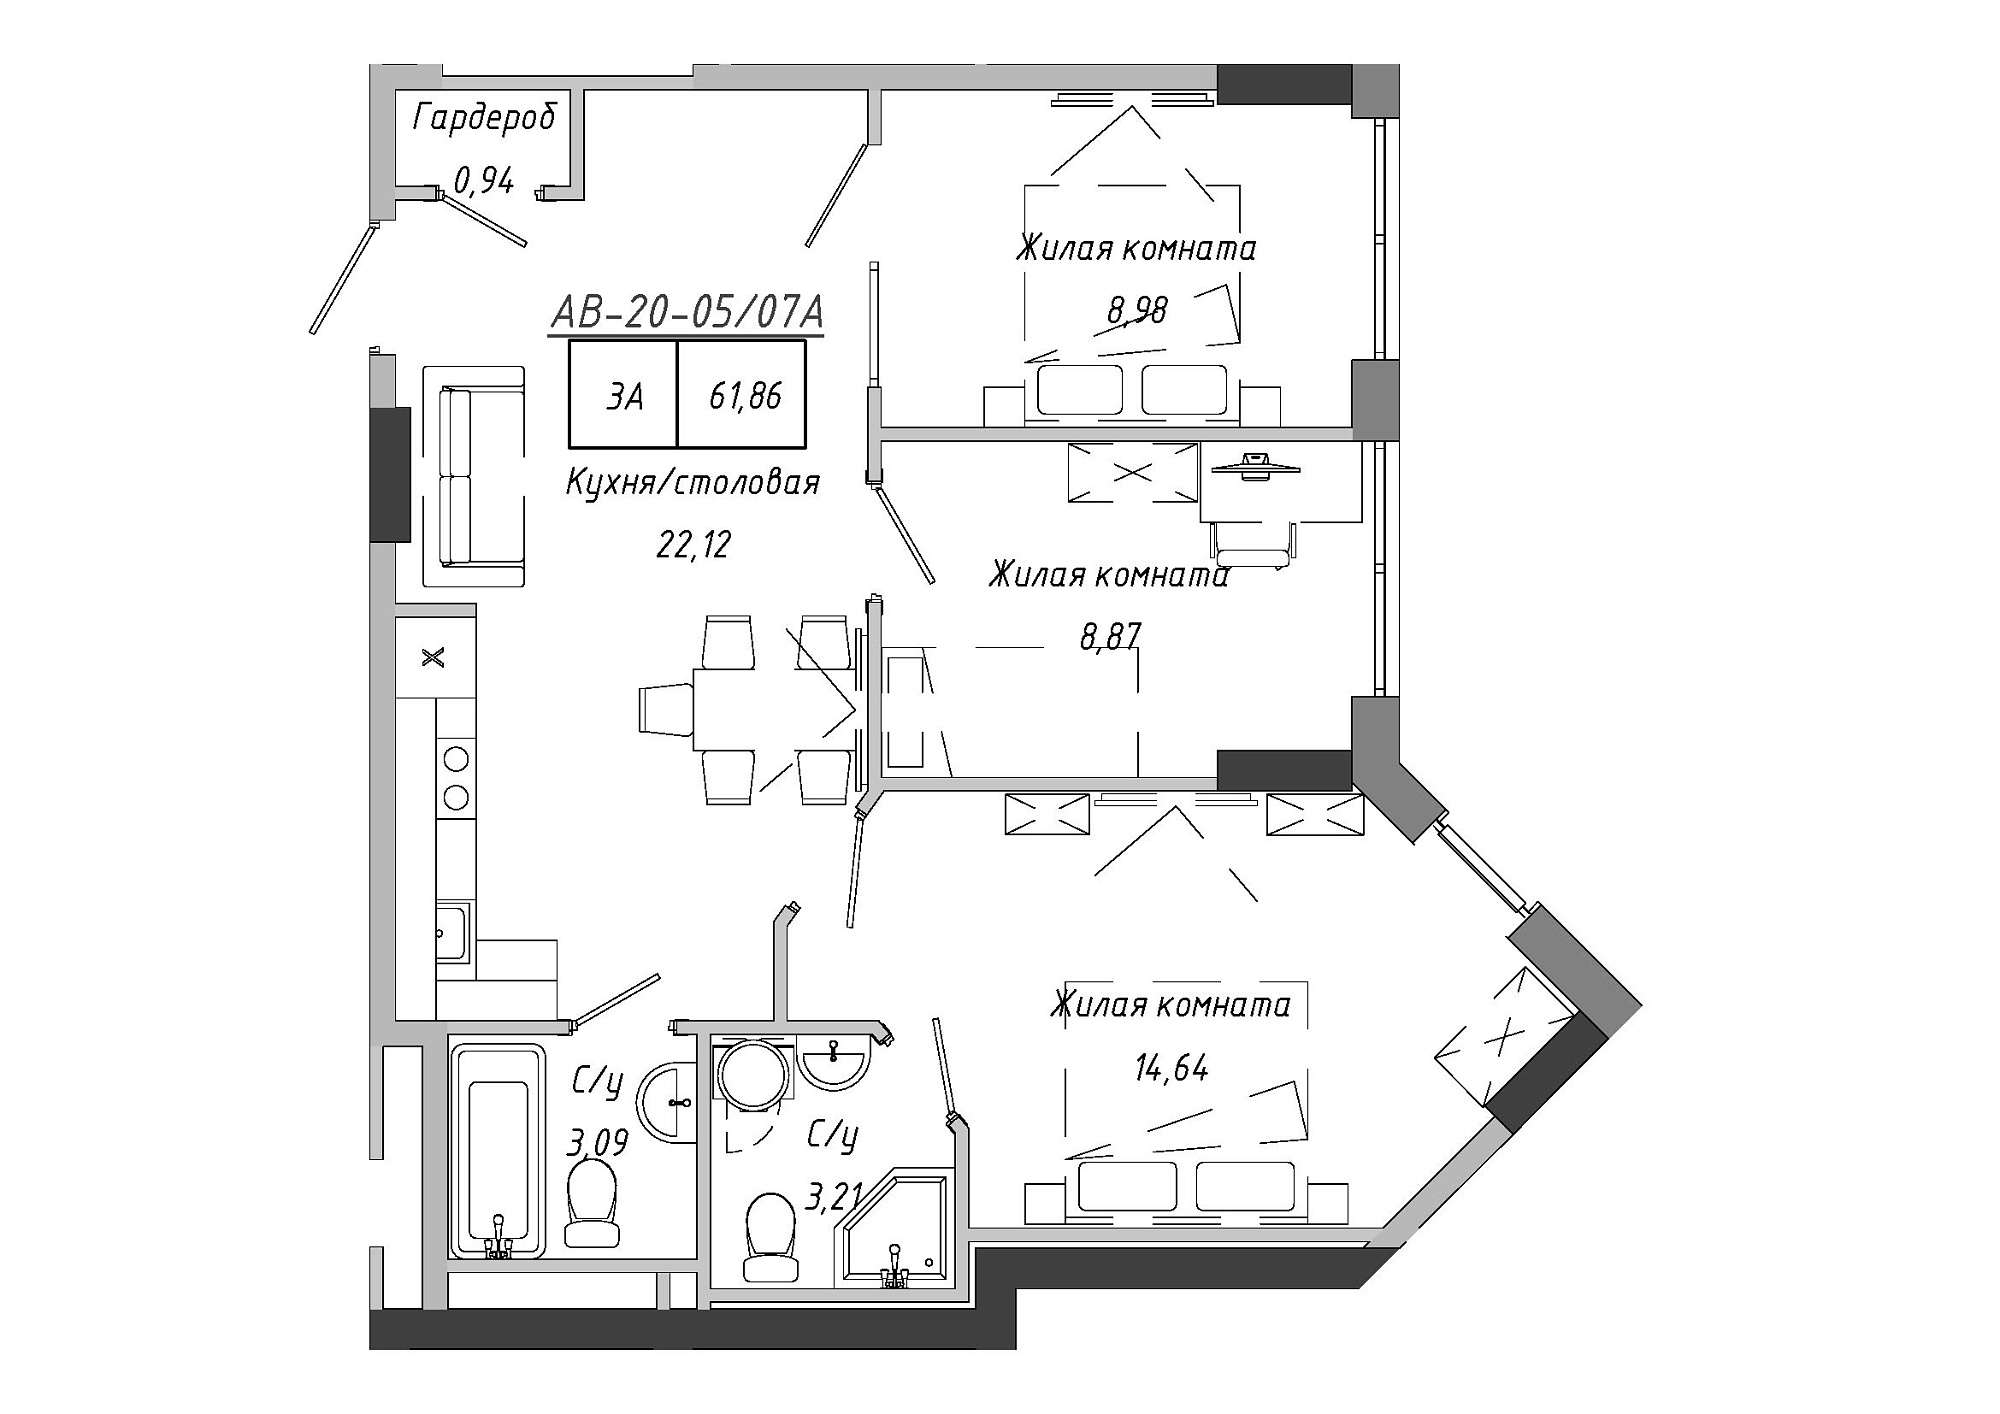 Планировка 3-к квартира площей 62.67м2, AB-20-05/0007а.